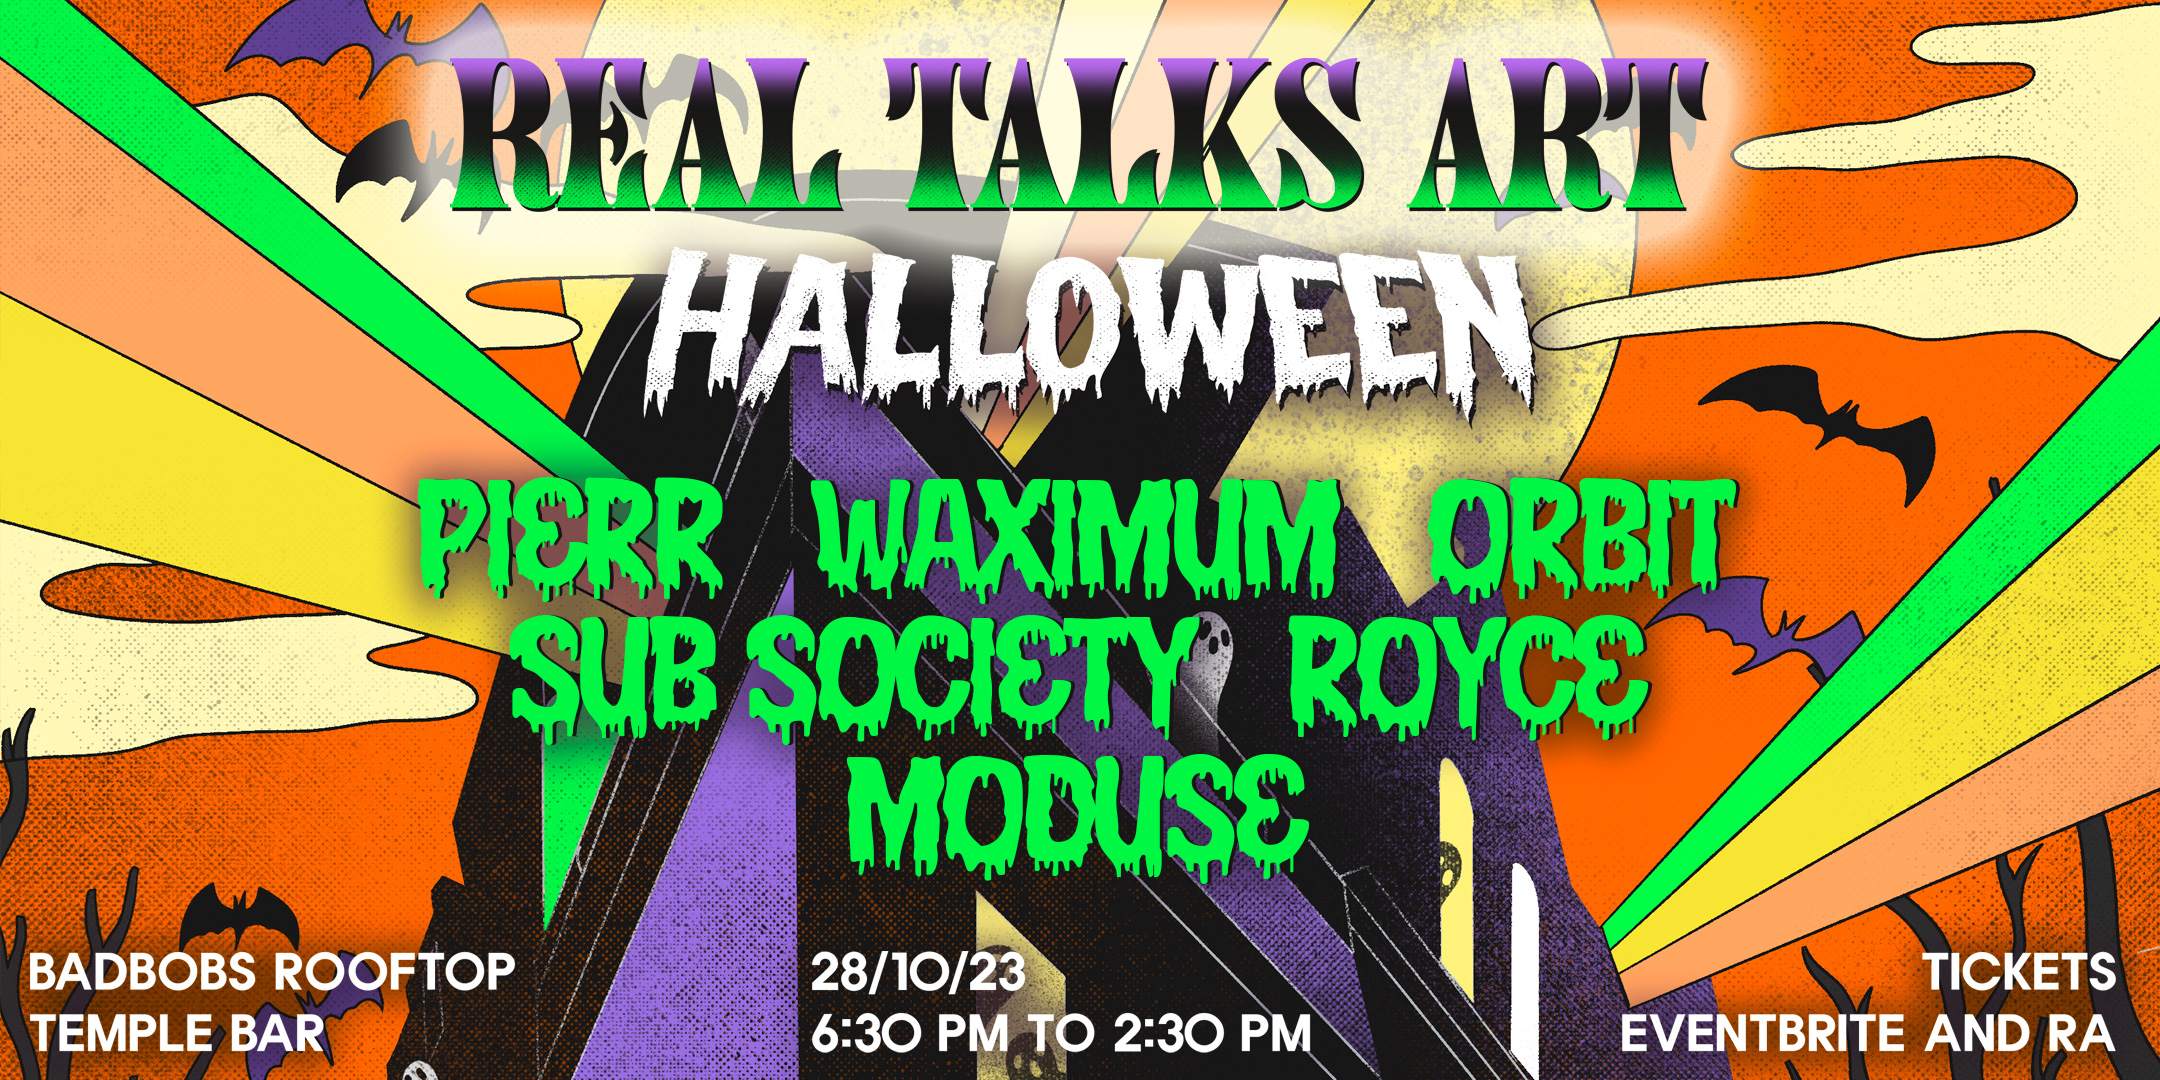 Real Talks.Art Halloween - フライヤー裏